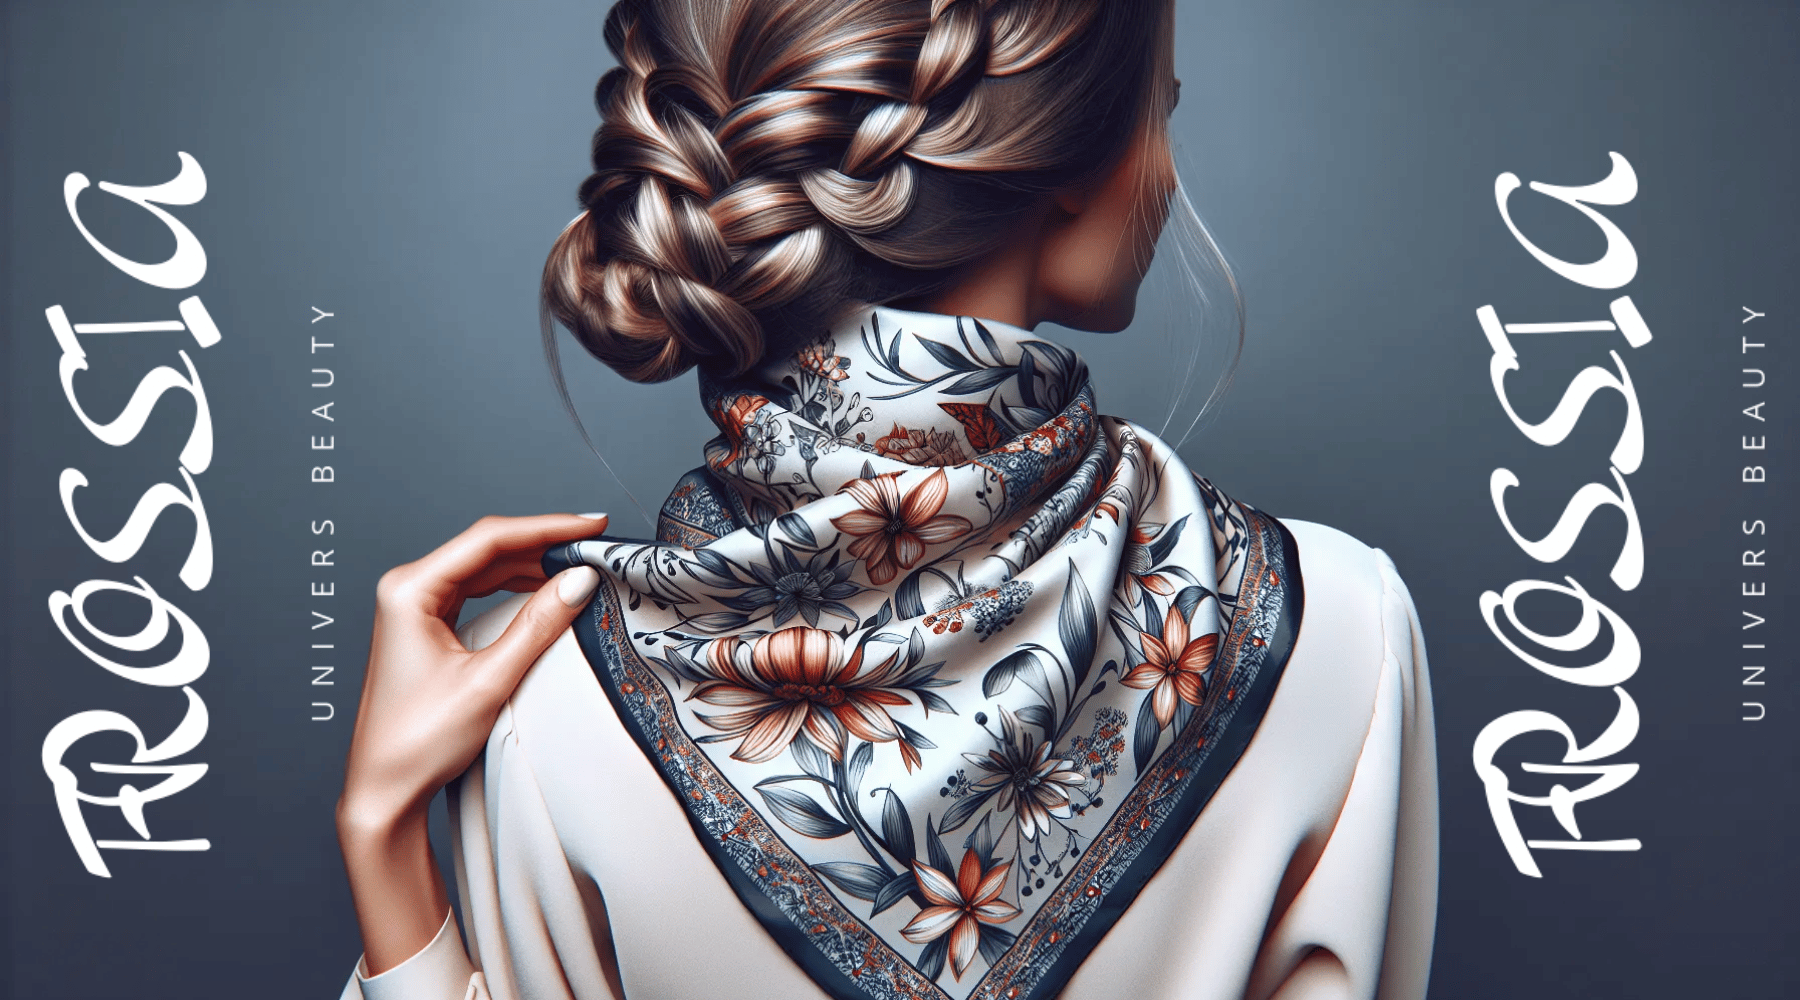 Le Foulard en Soie : l'accessoire incontournable pour sublimer vos coiffures